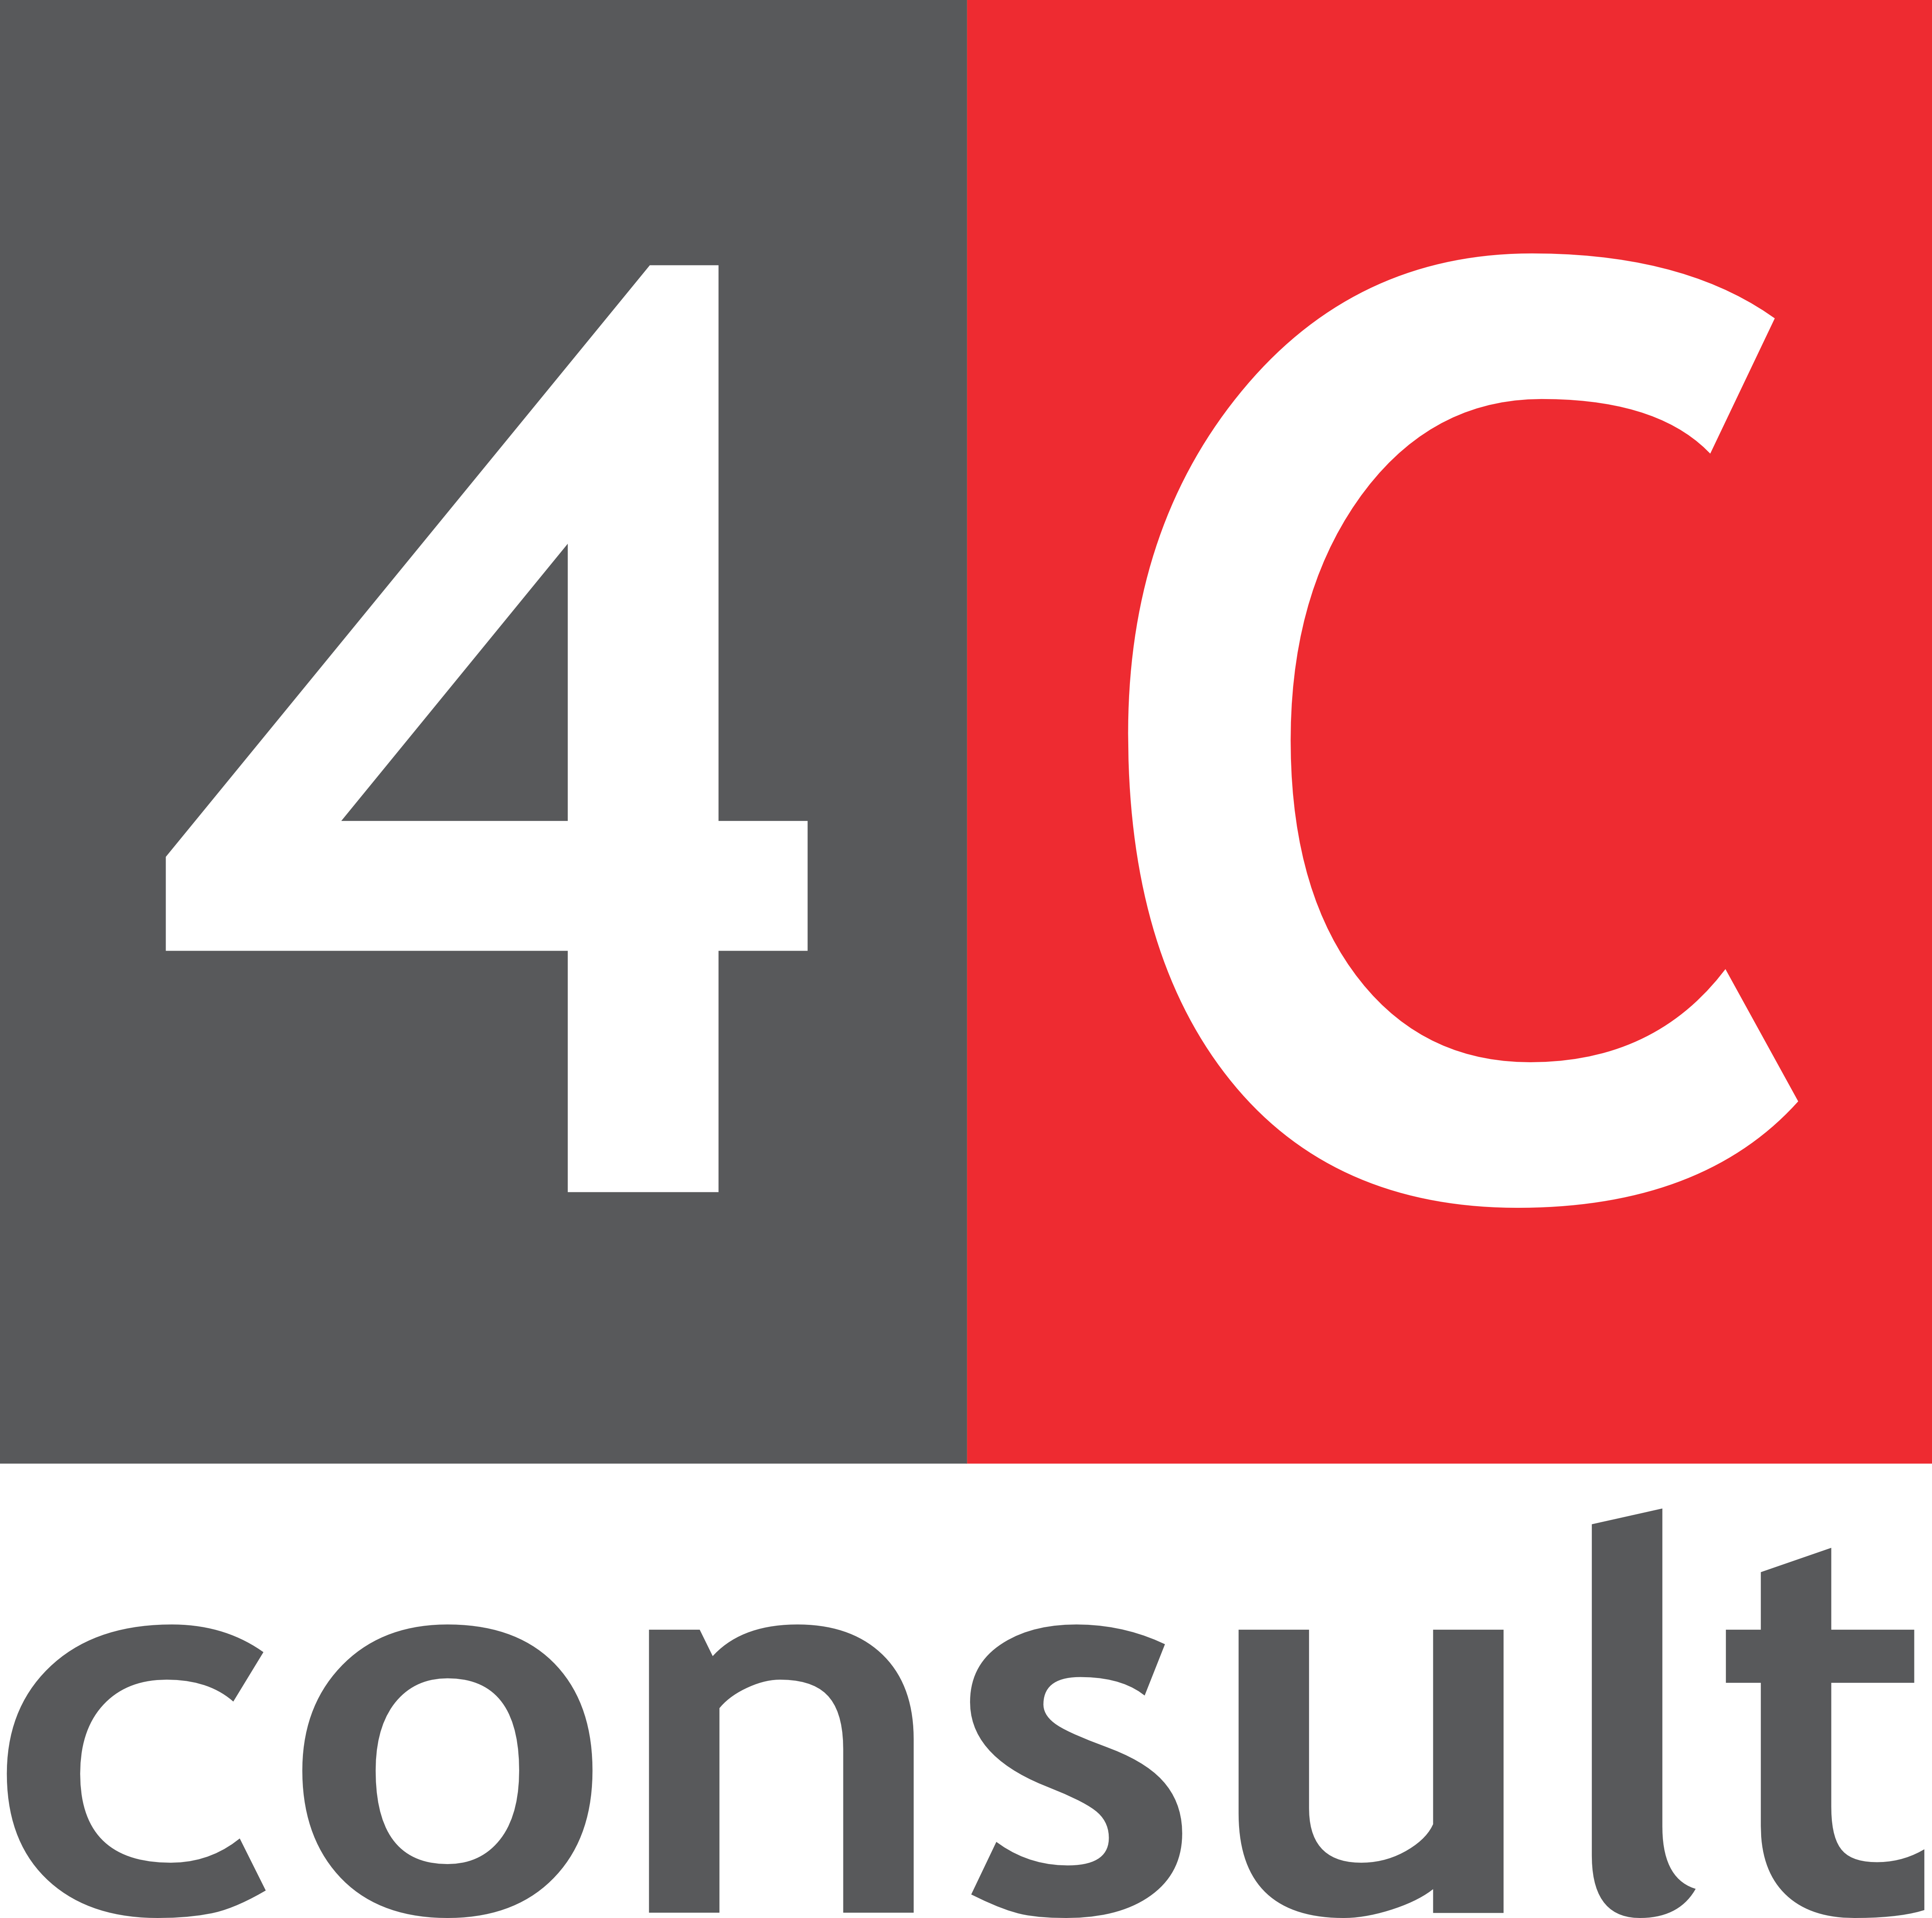 4C Logo - 4C Consult - consultant and management services